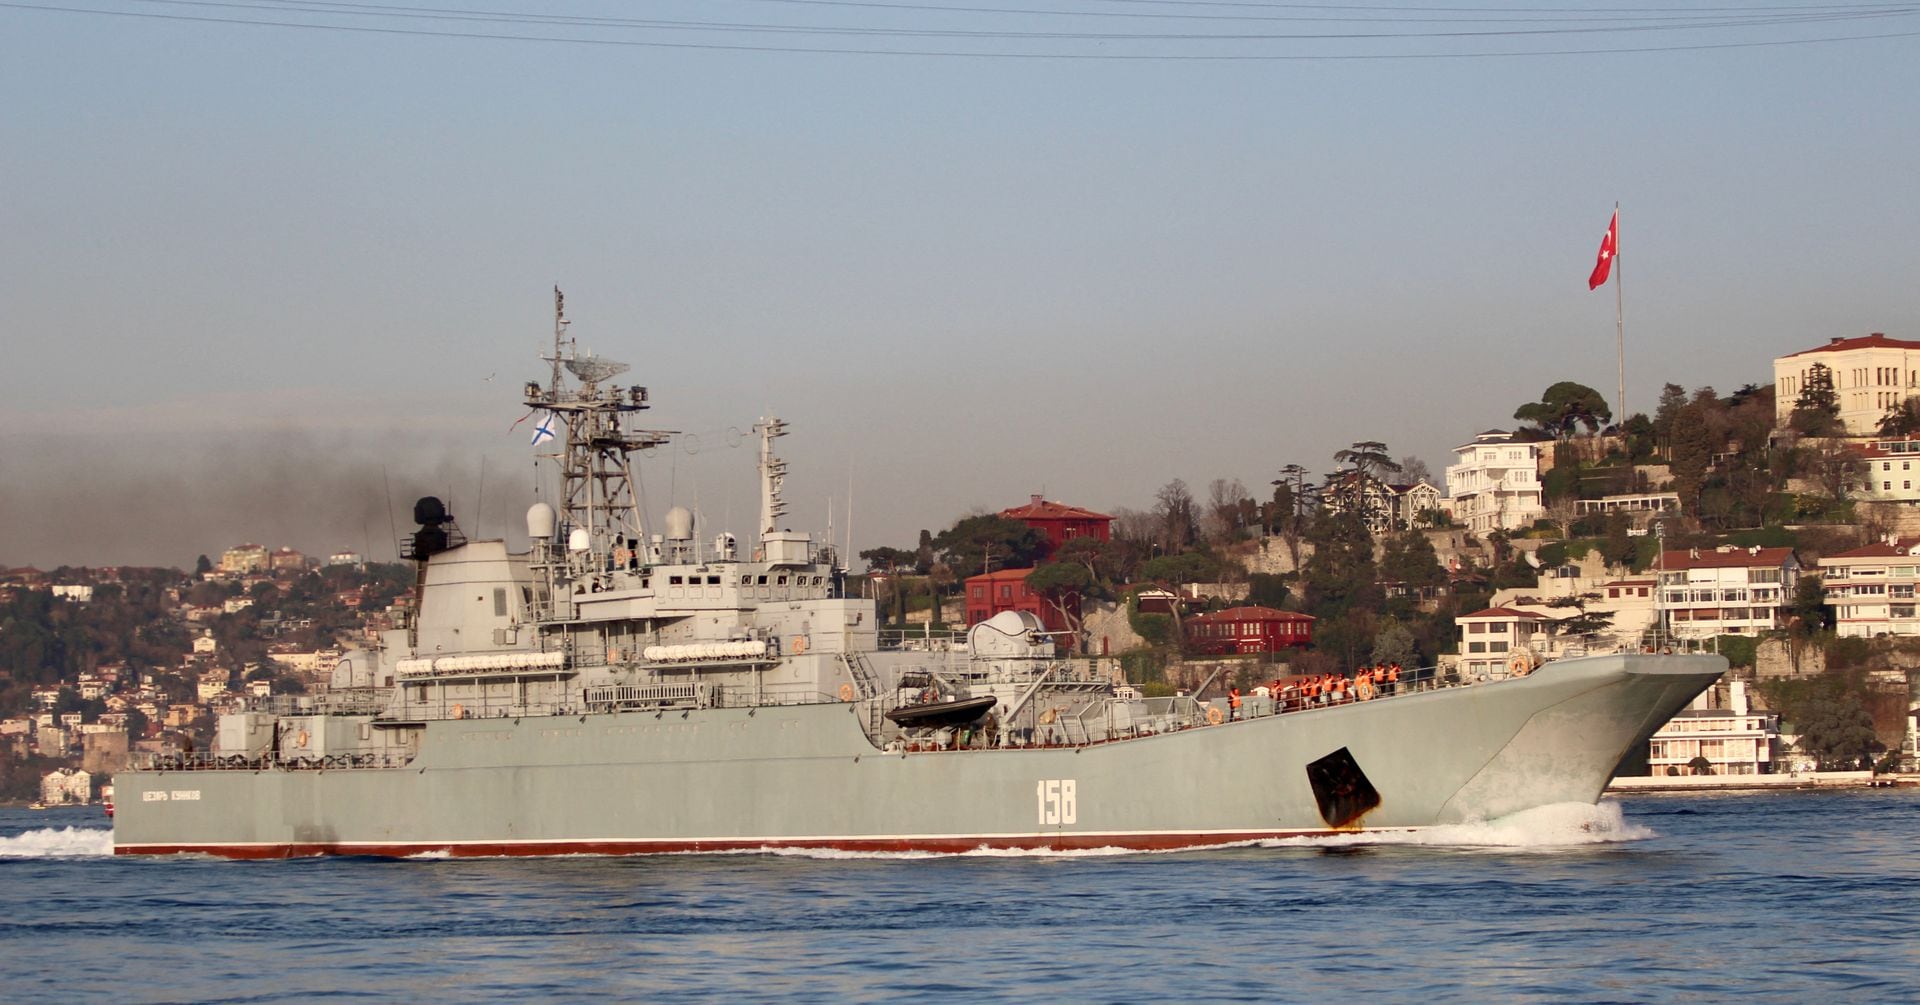 ロシア大型揚陸艦を撃沈、ウクライナ発表 クリミア沖